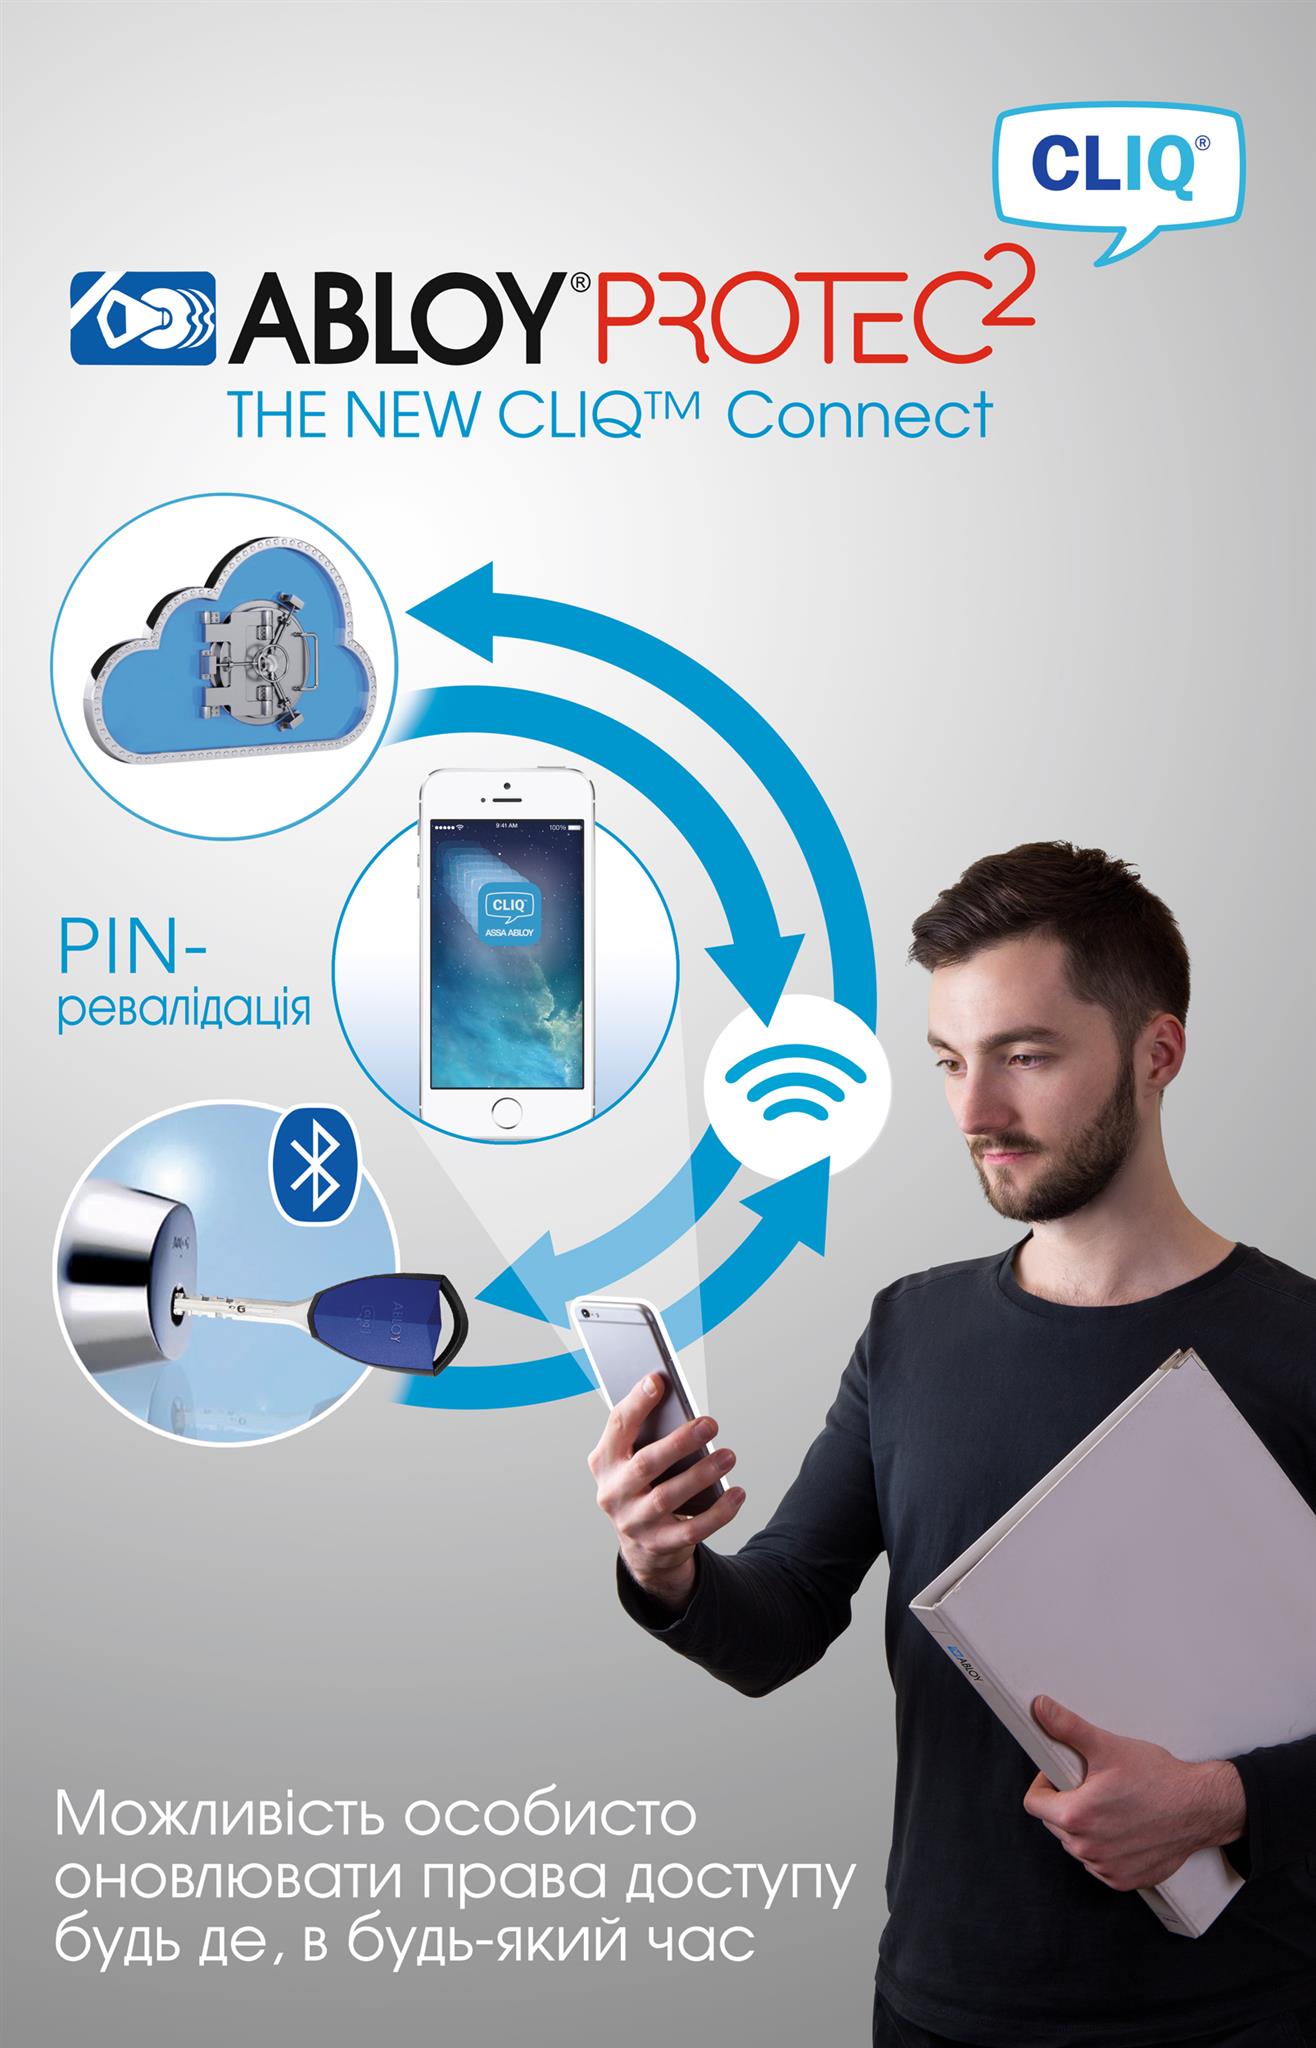 Електромеханічна система контролю доступу ABLOY PROYEC2  CLIQ та програма CLIQ Connect для мобільних пристроїв